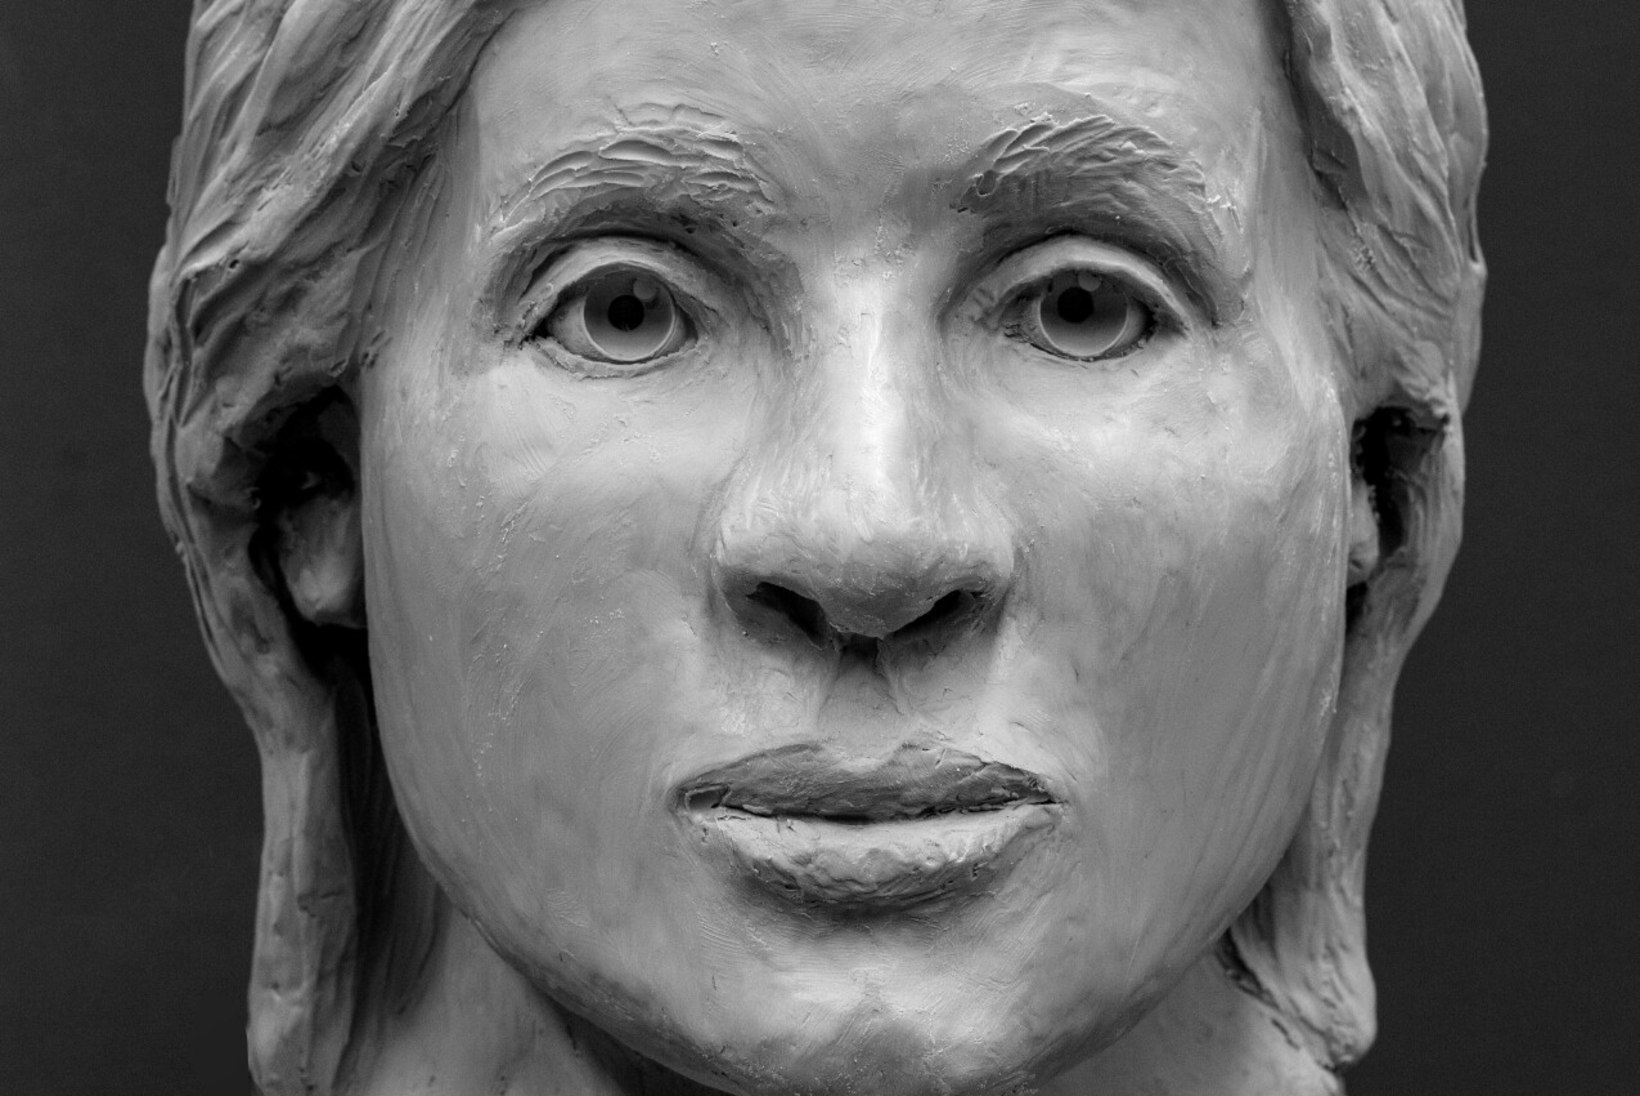 FOTOD | Kas tunned ära? FBI ekspertidel valmis Nõmmelt tapetuna leitud naise 3D pea kujutis